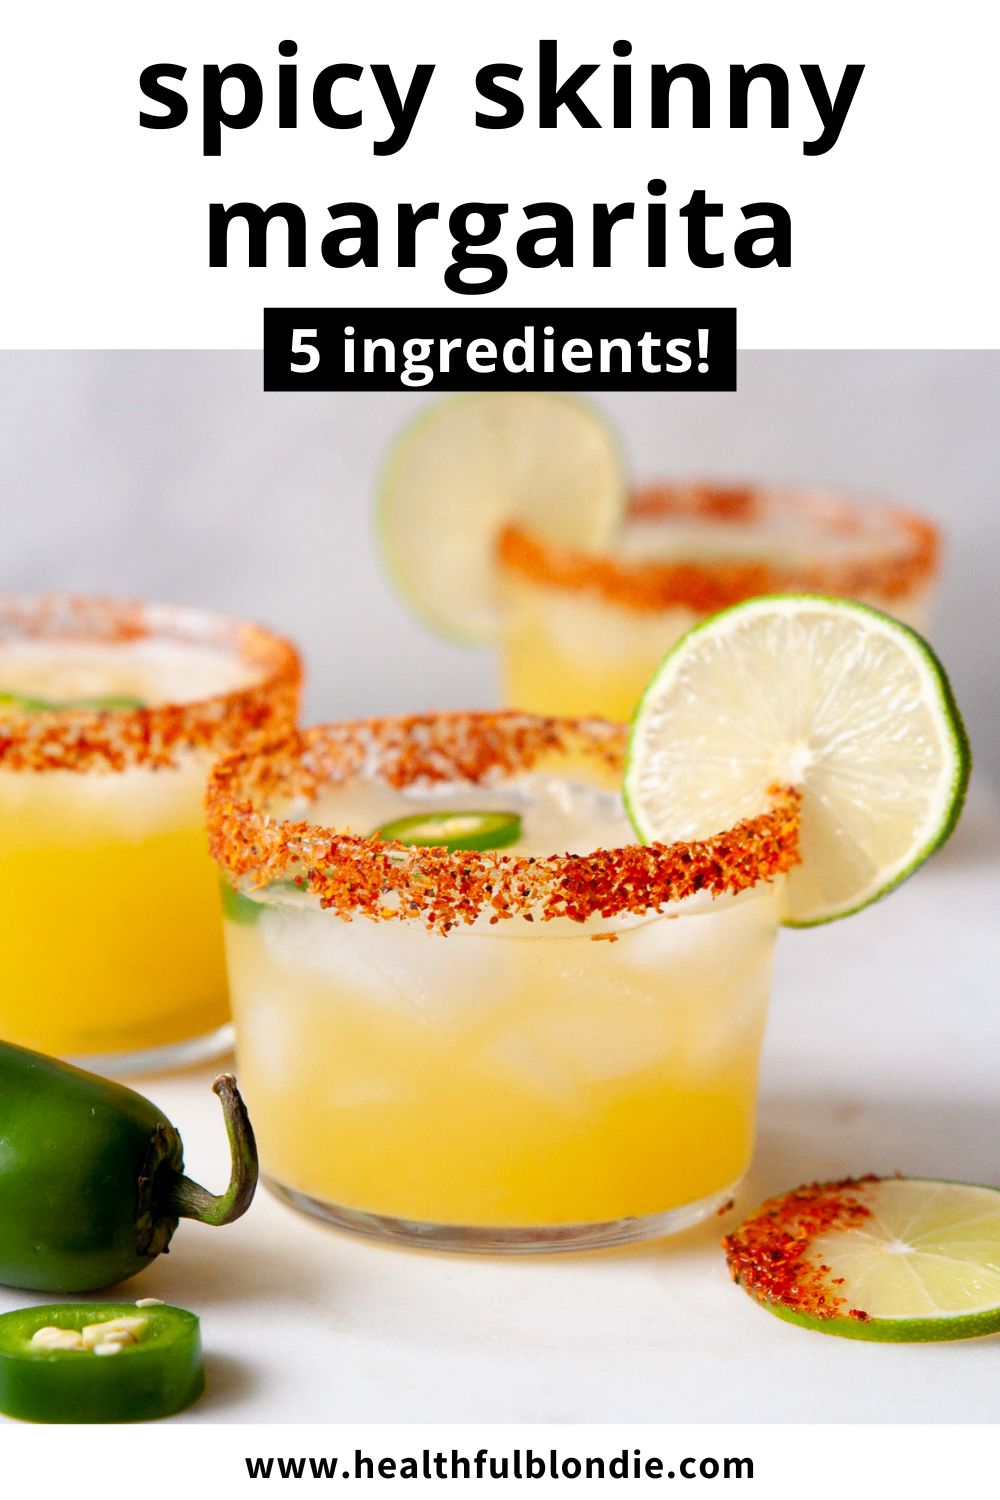 Skinny Spicy Margarita Recipe - Healthful Blondie